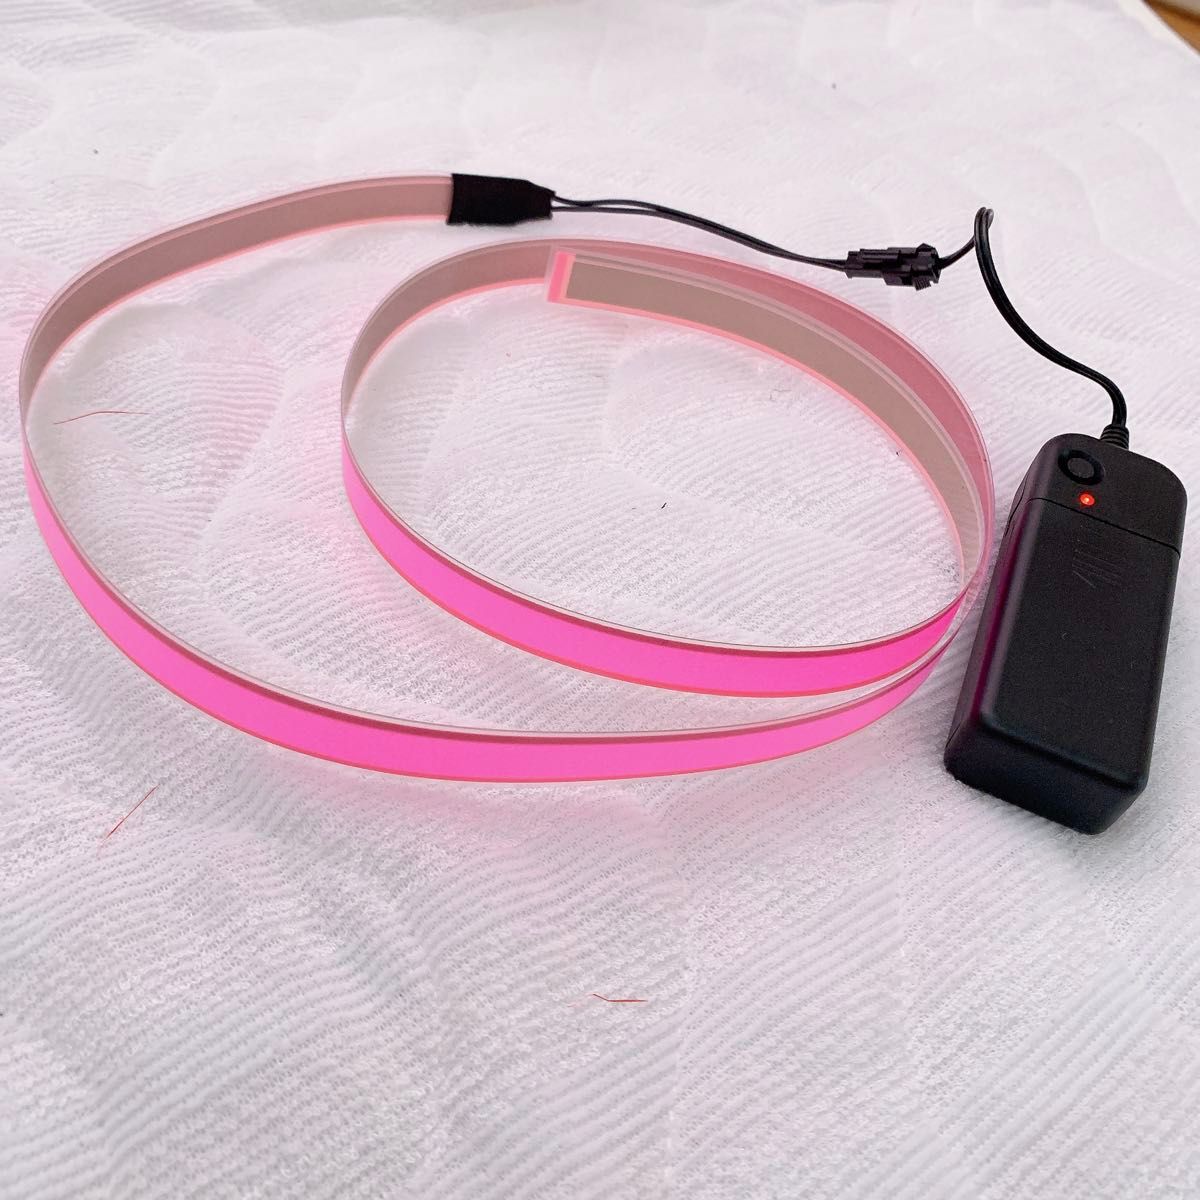 有機EL照明ライト 帯状 リボン型 ELテープ 1×100cm ピンク 極薄 EL 照明 テープタイプ リボンタイプ ピンク